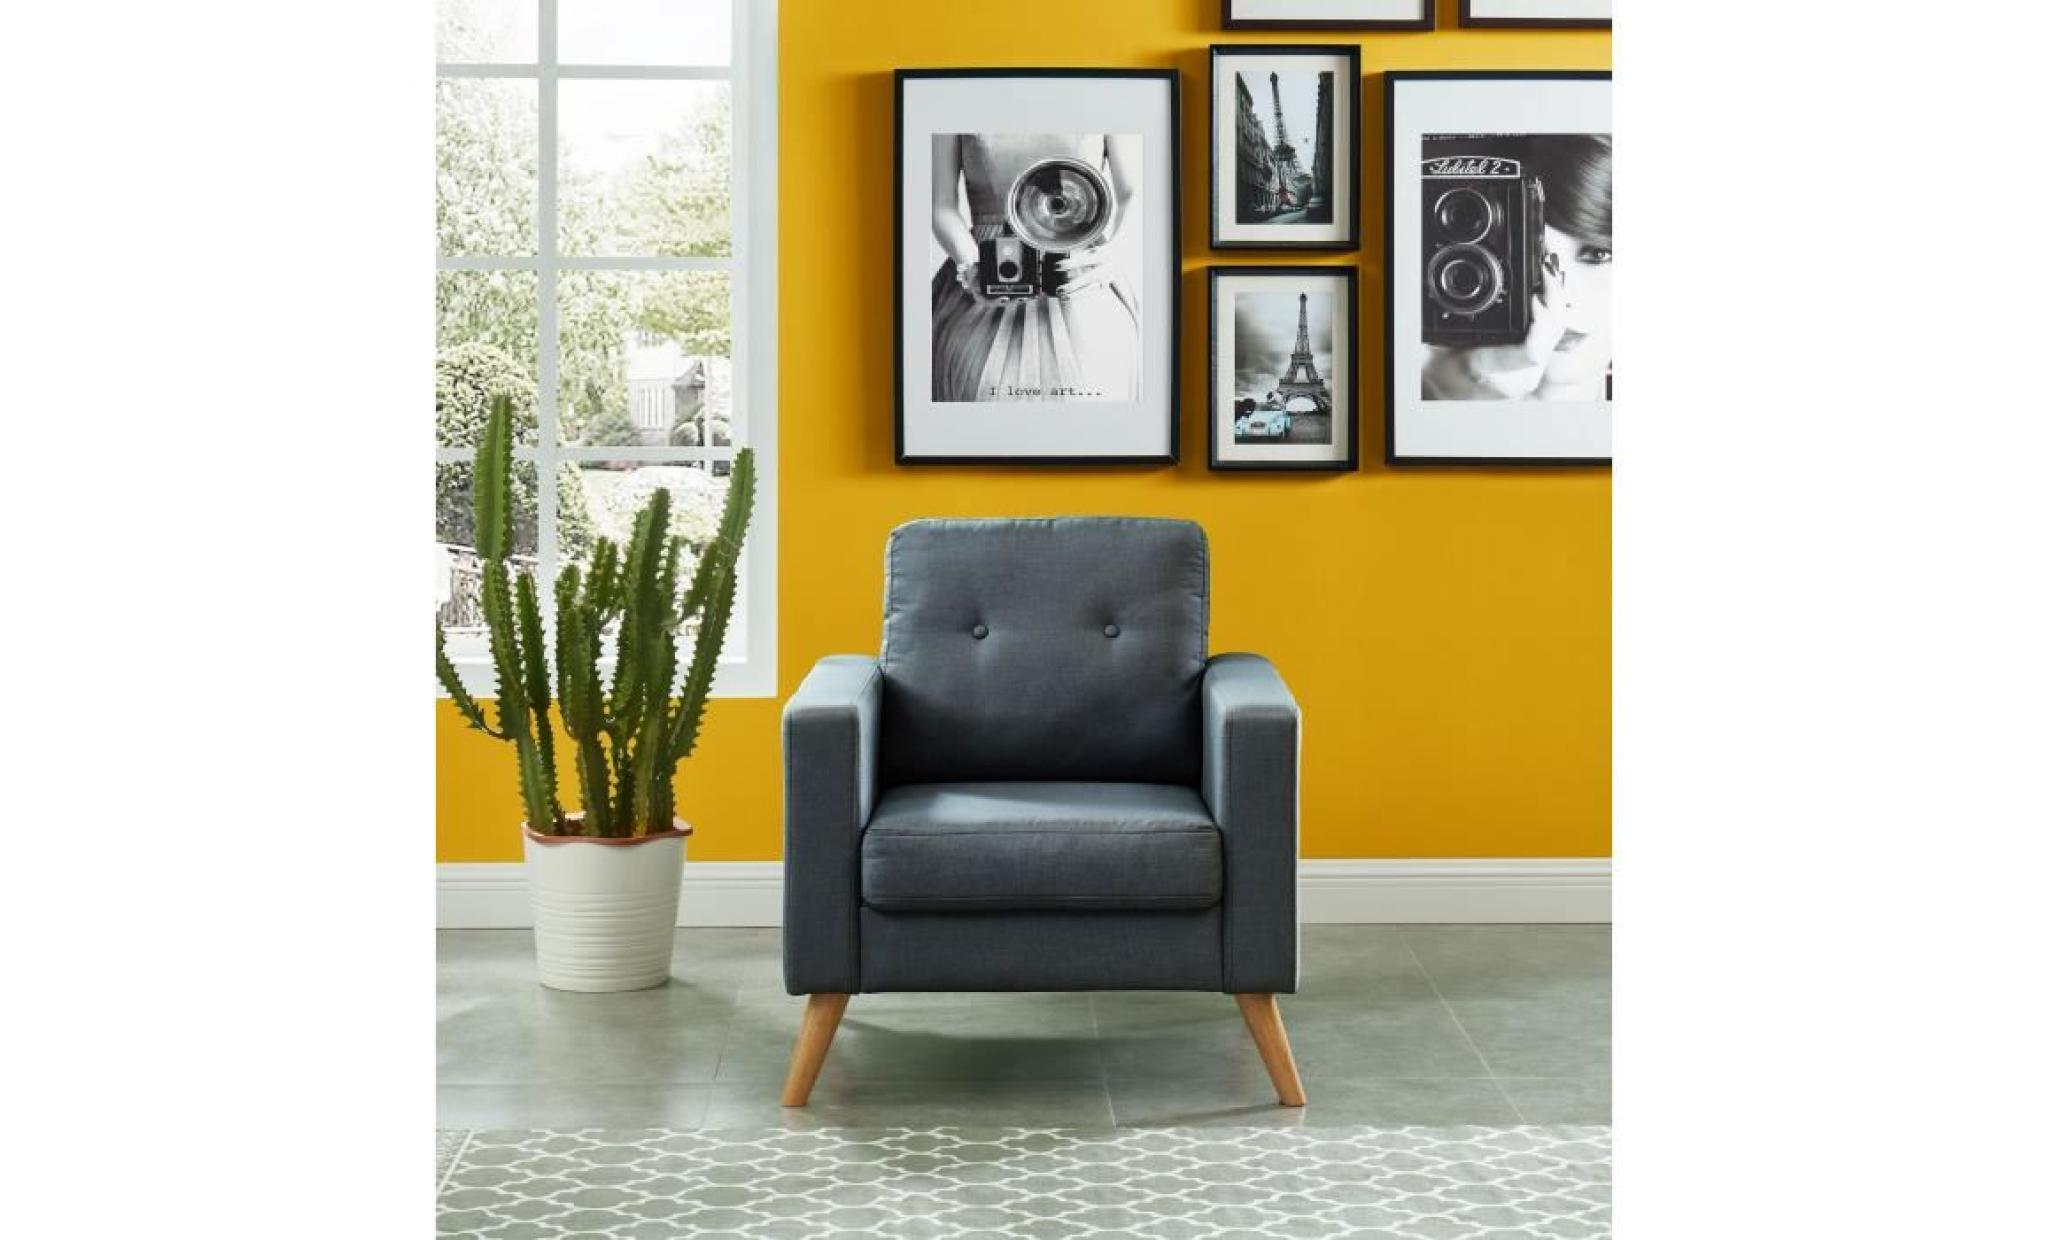 ibra fauteuil   tissu gris   scandinave   l 80 x p 83 cm pas cher